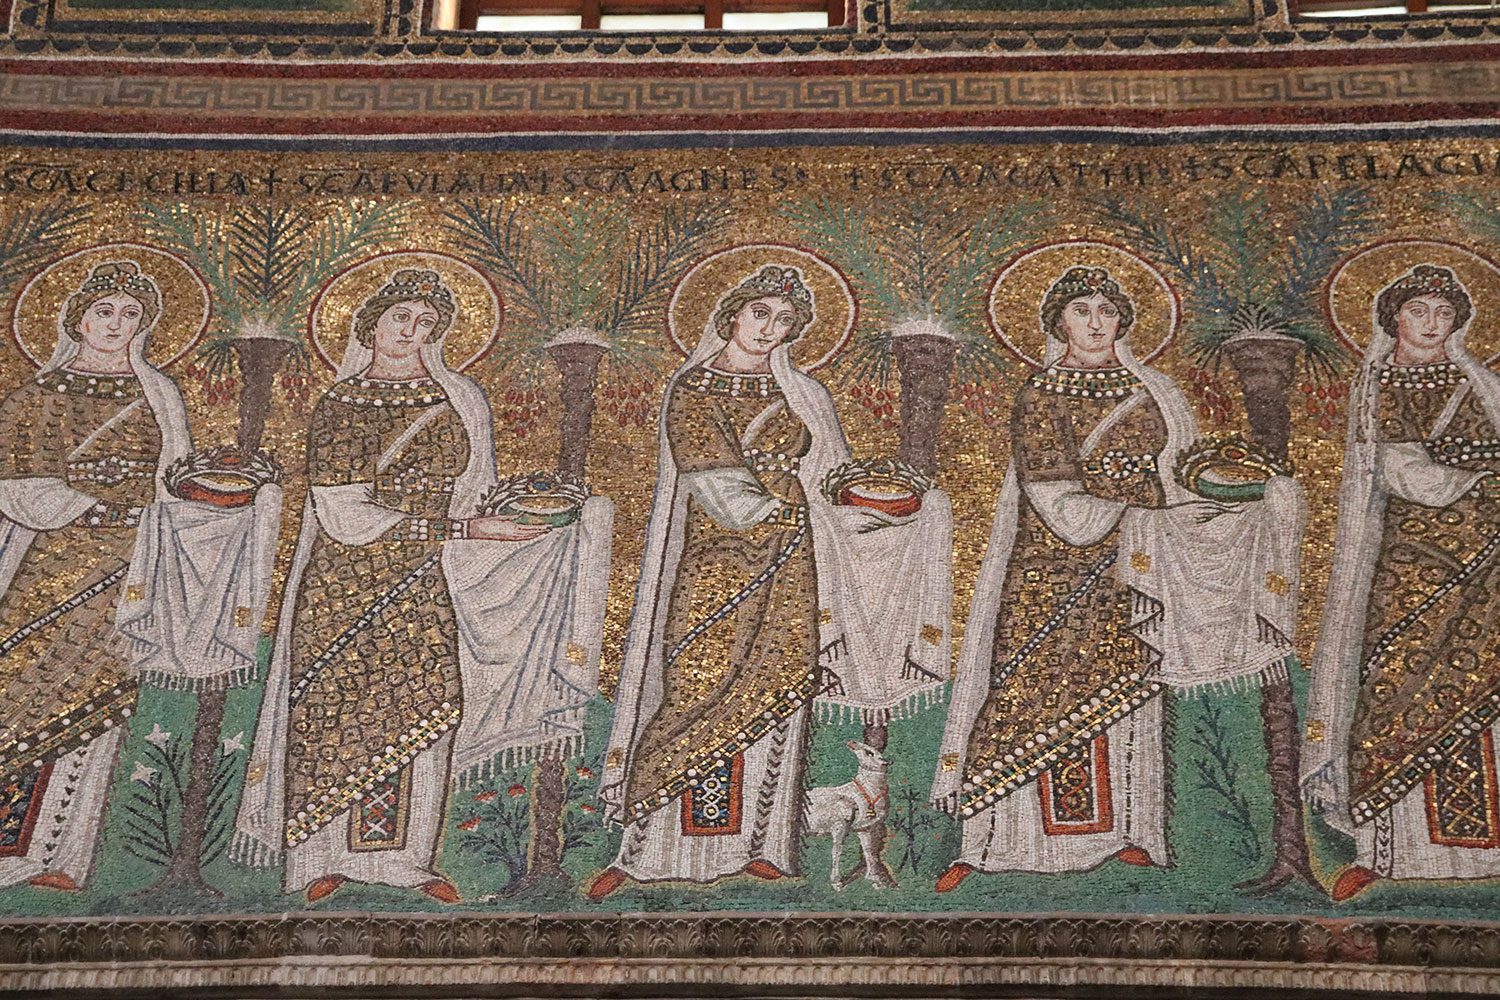 Sant'Apollinare Nuovo, Ravenna